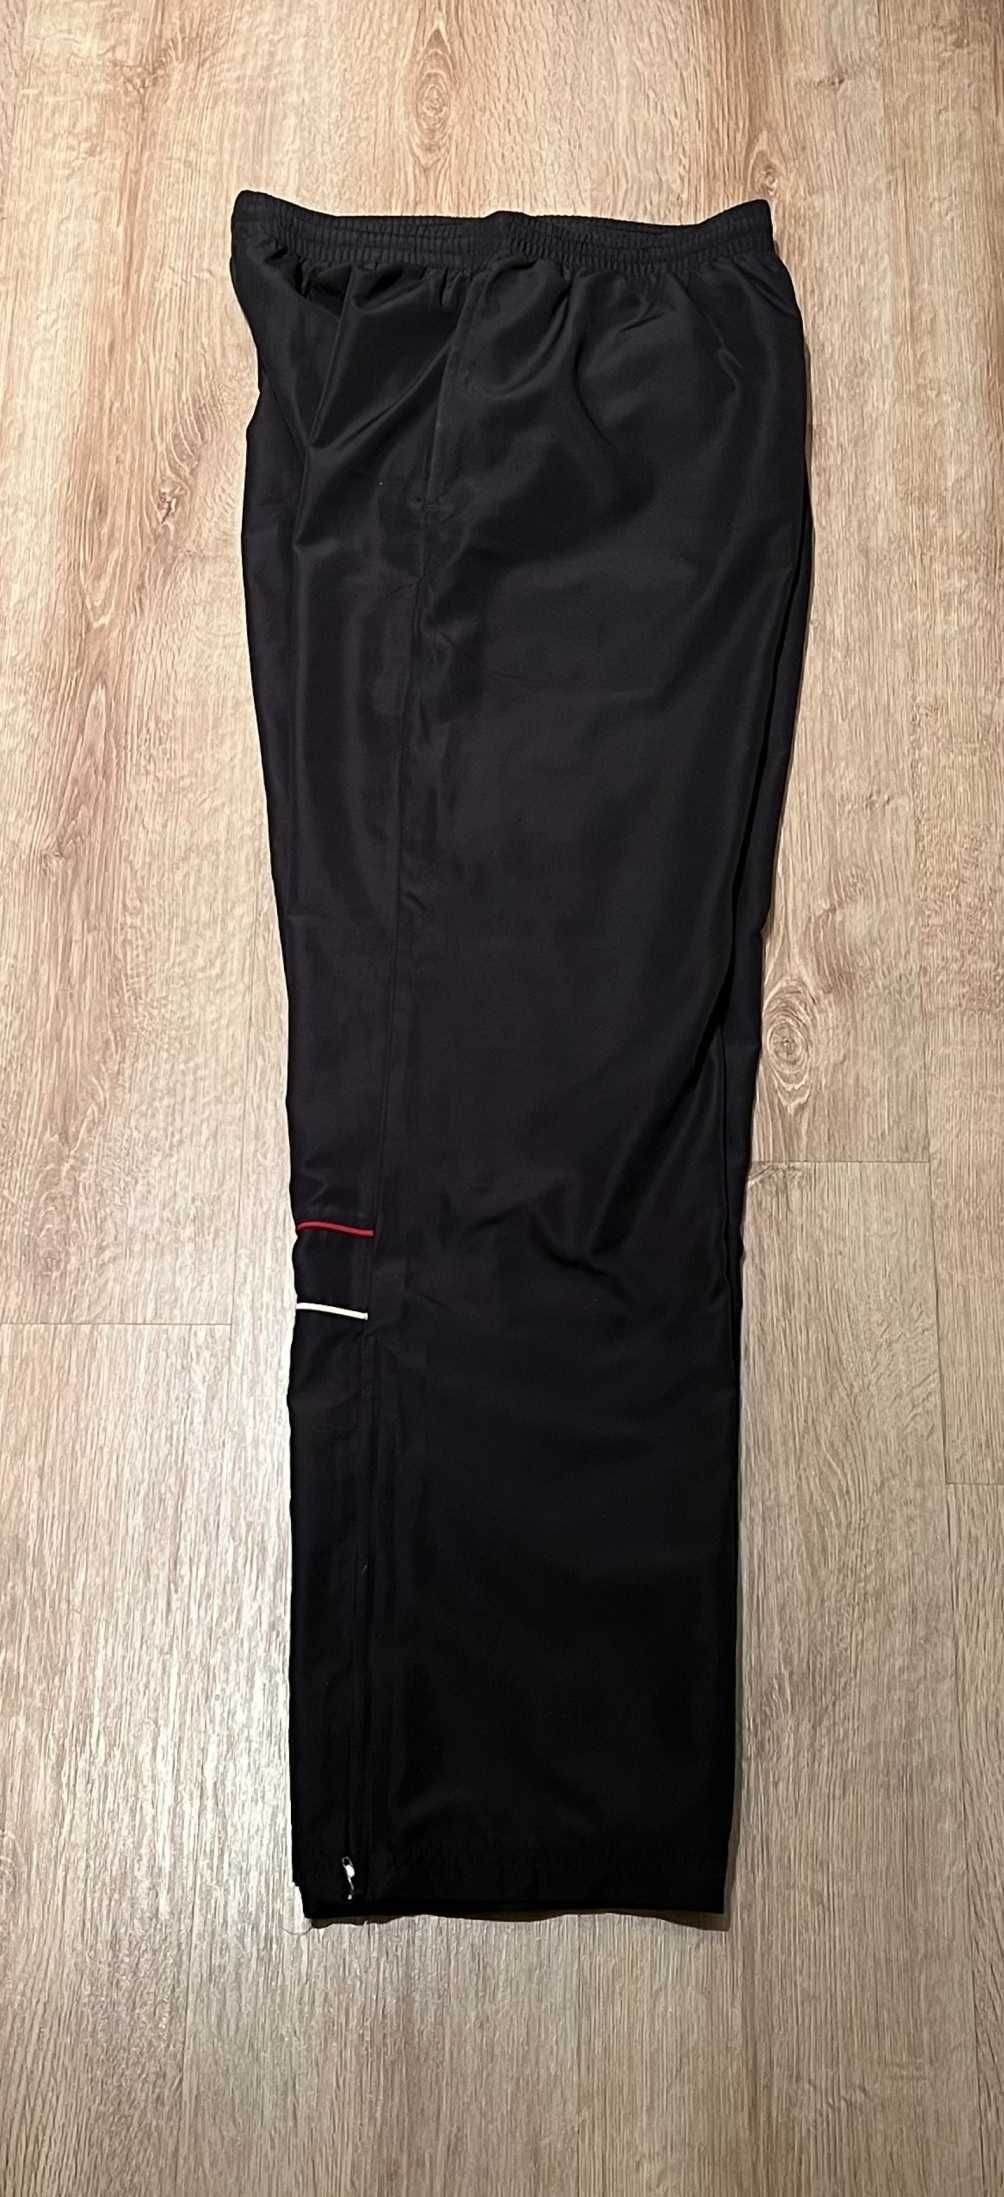 Czarne spodnie dresowe męskie Reebok, rozmiar M